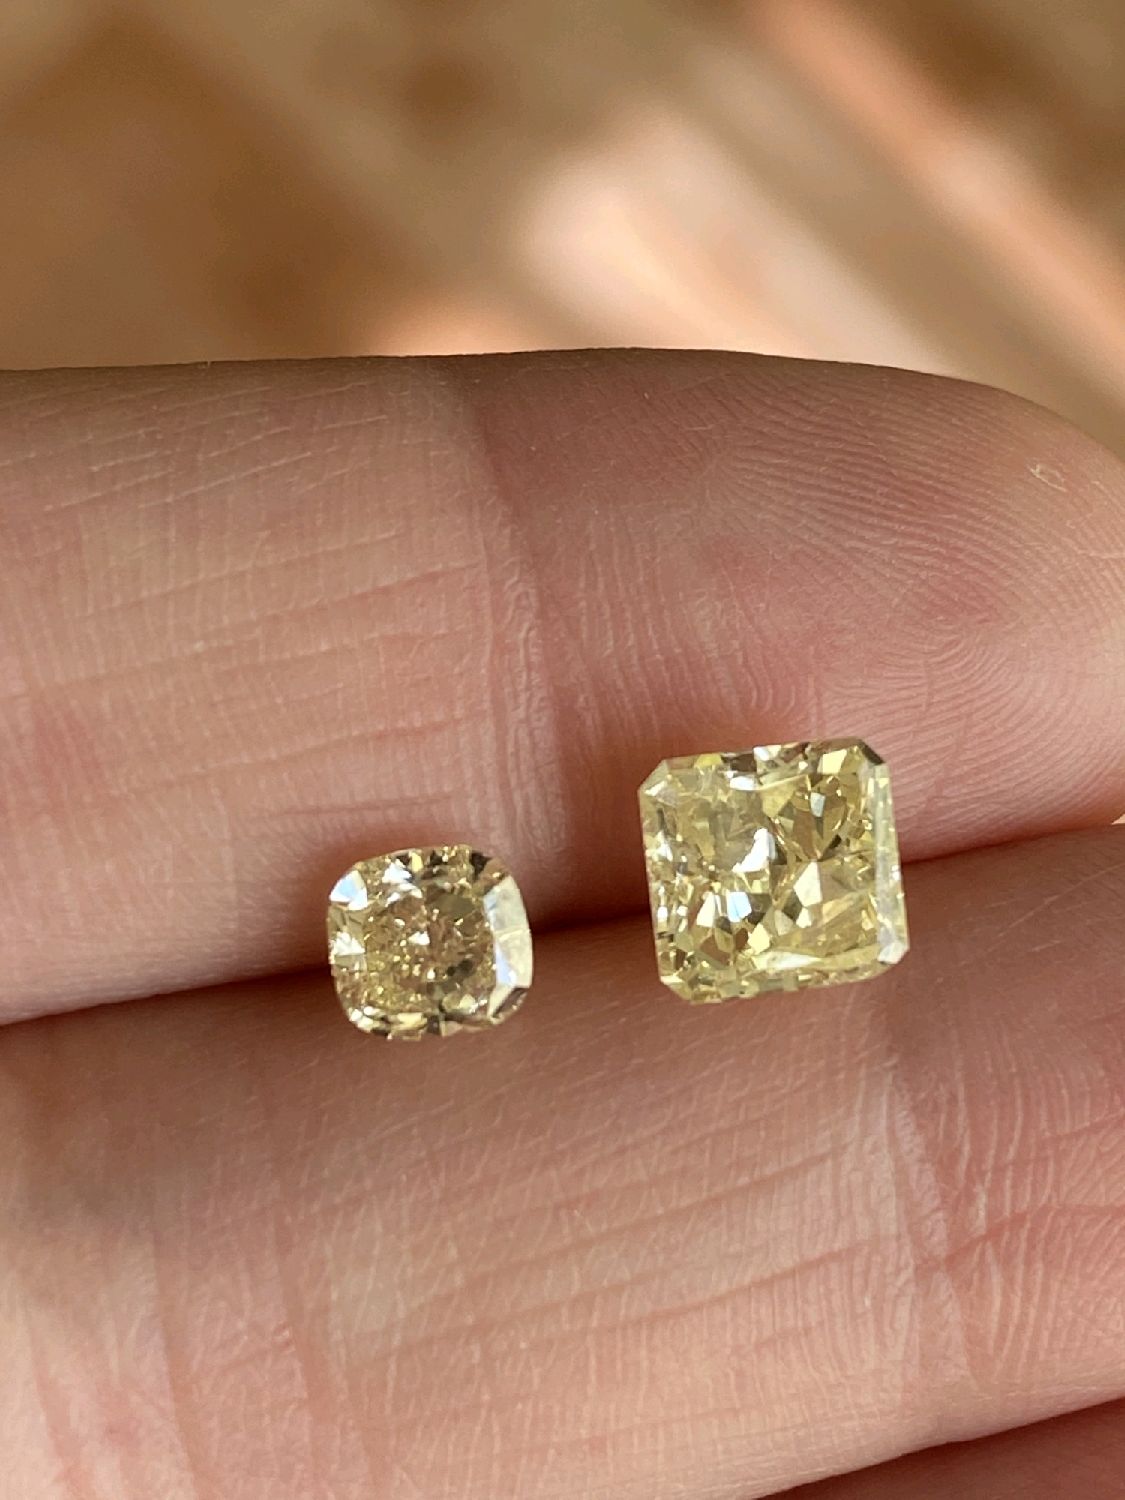 Желтый бриллиант